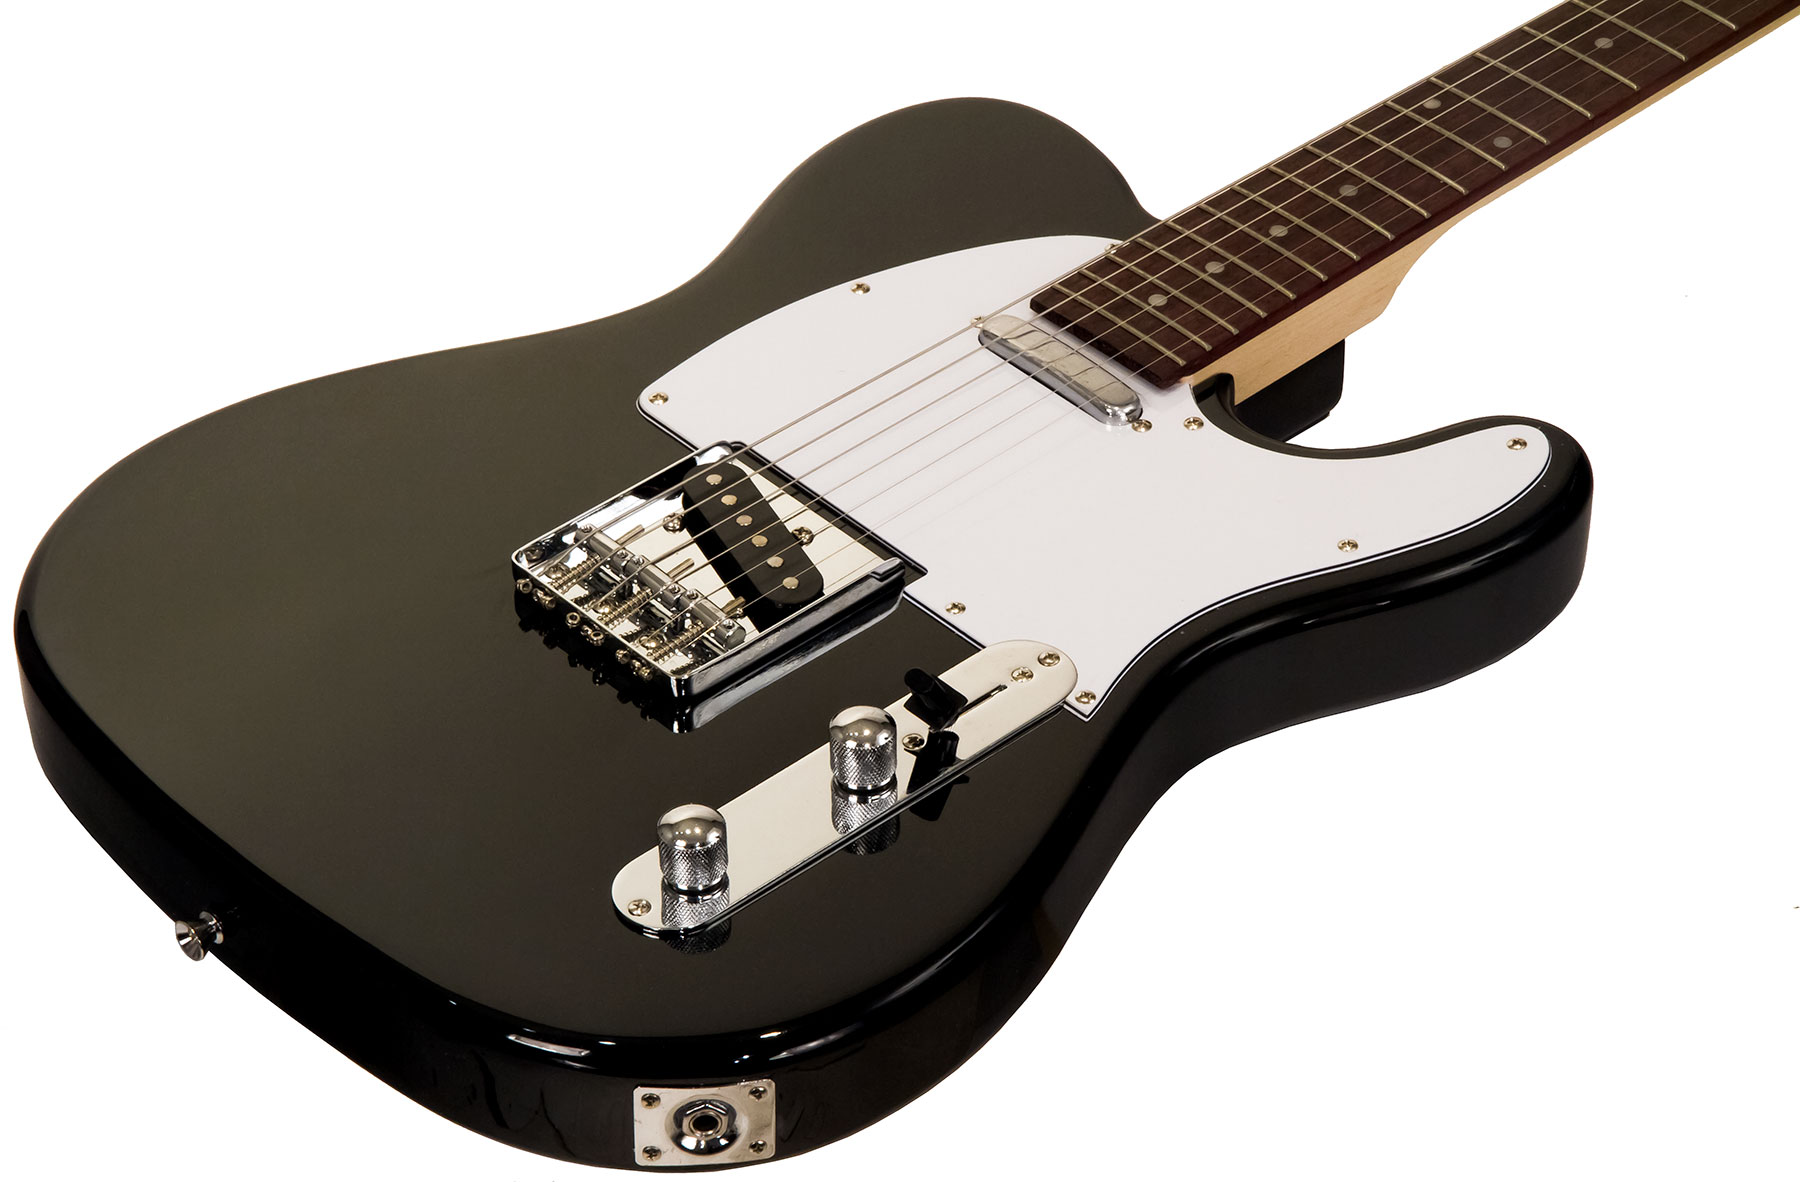 Eastone Tl70 Ss Ht Pur - Black - Guitarra eléctrica con forma de tel - Variation 1